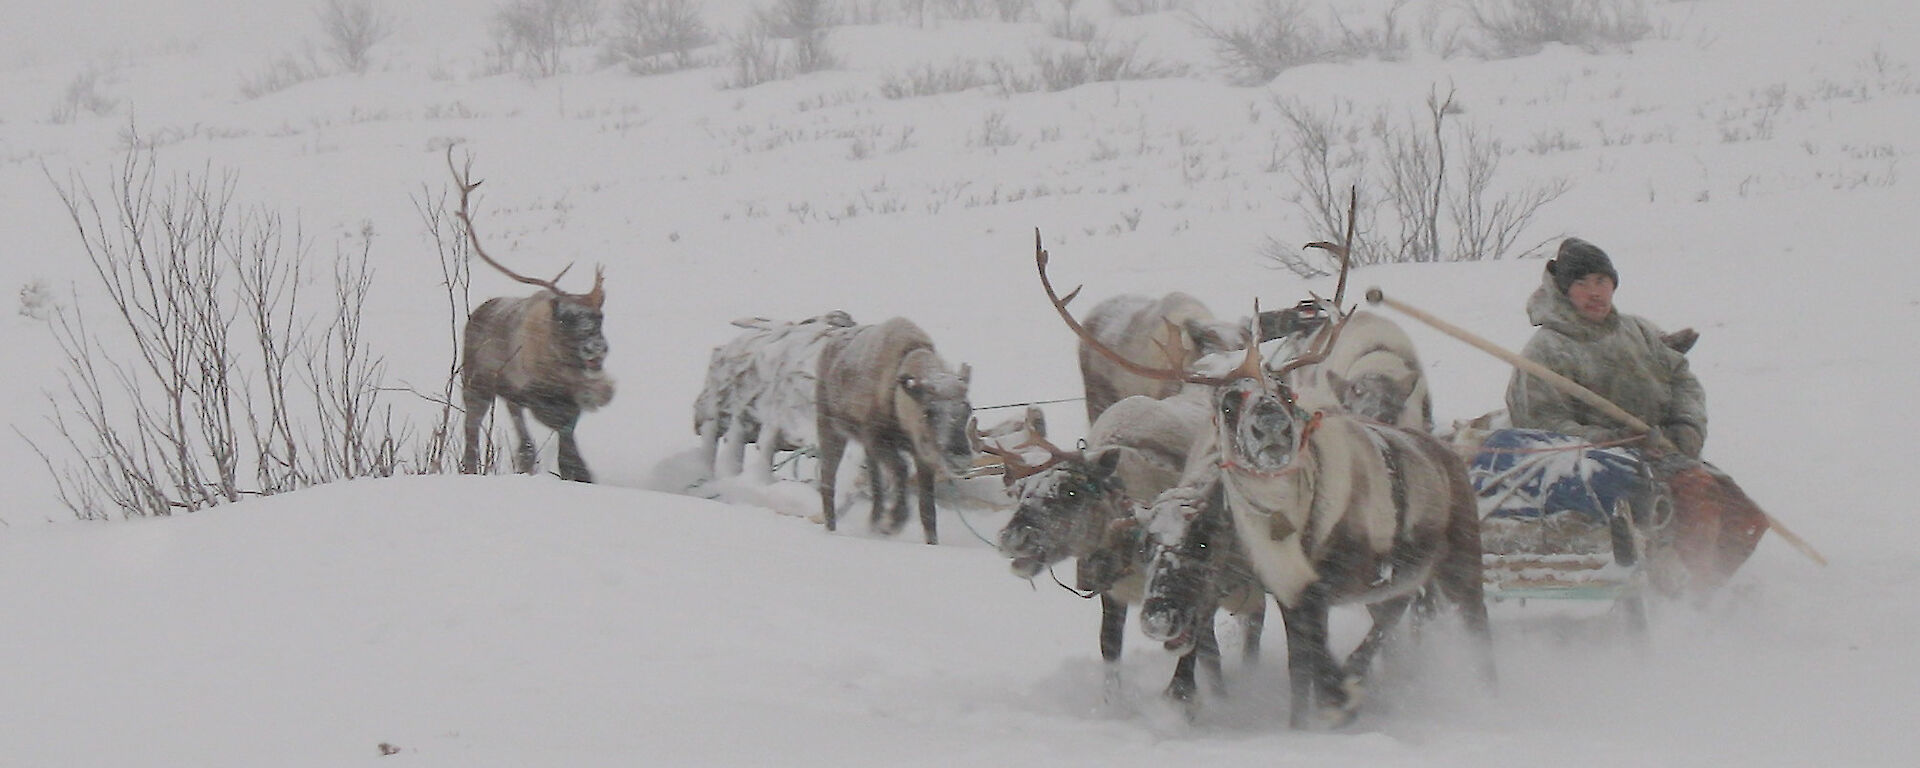 Herder Piotr Terent'ev drives a team of reindeer for the NOMAD project.